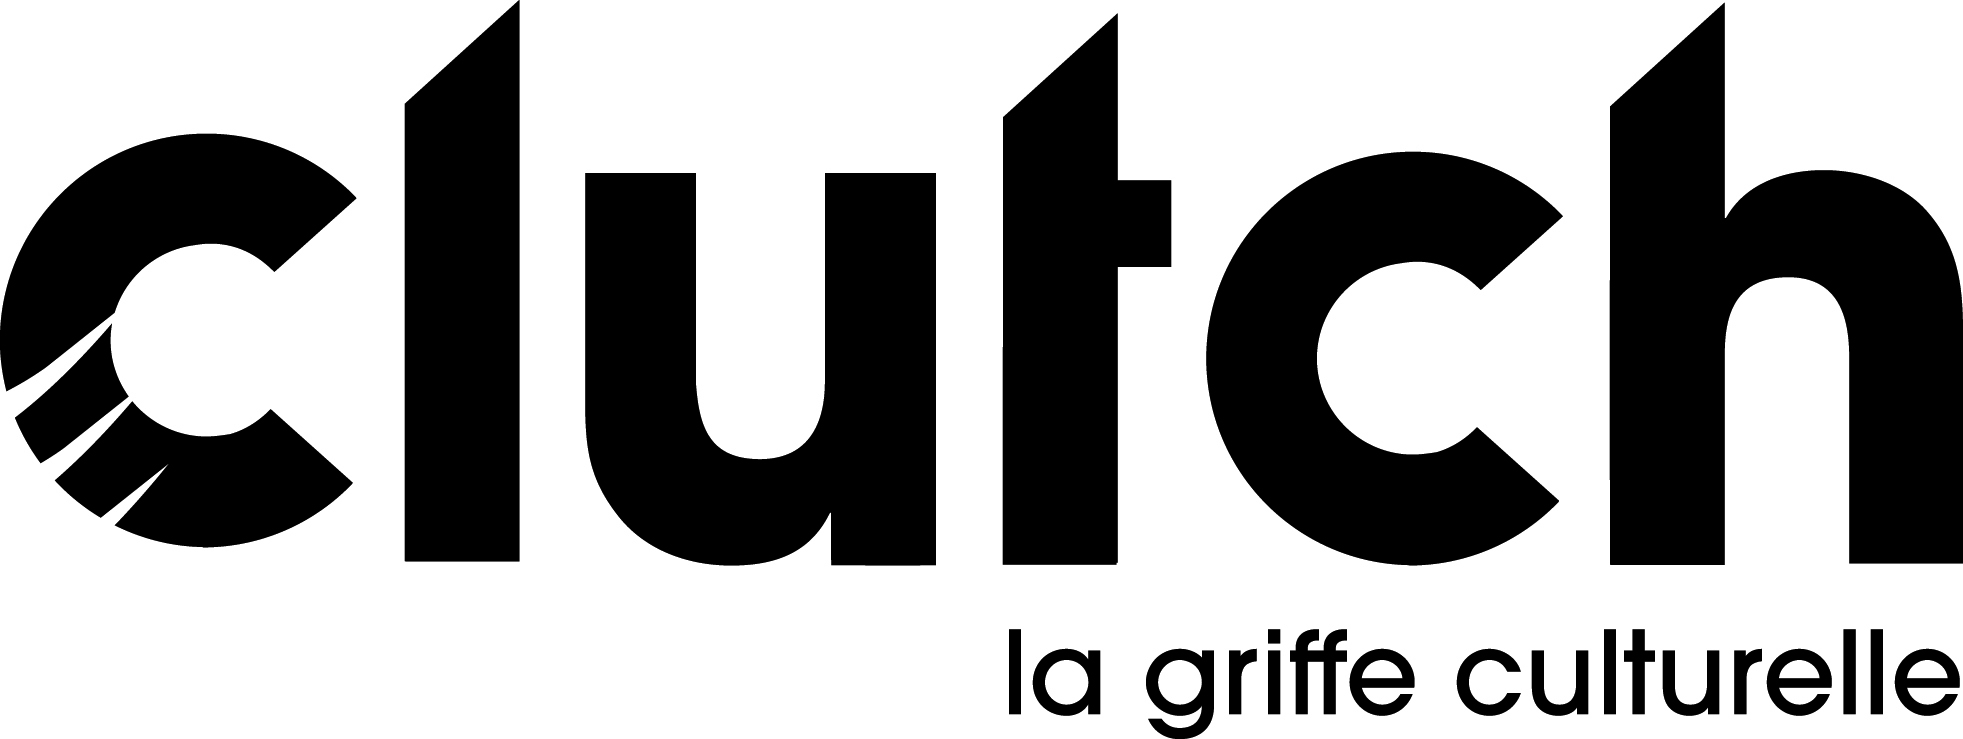 logo_Clutch-noir